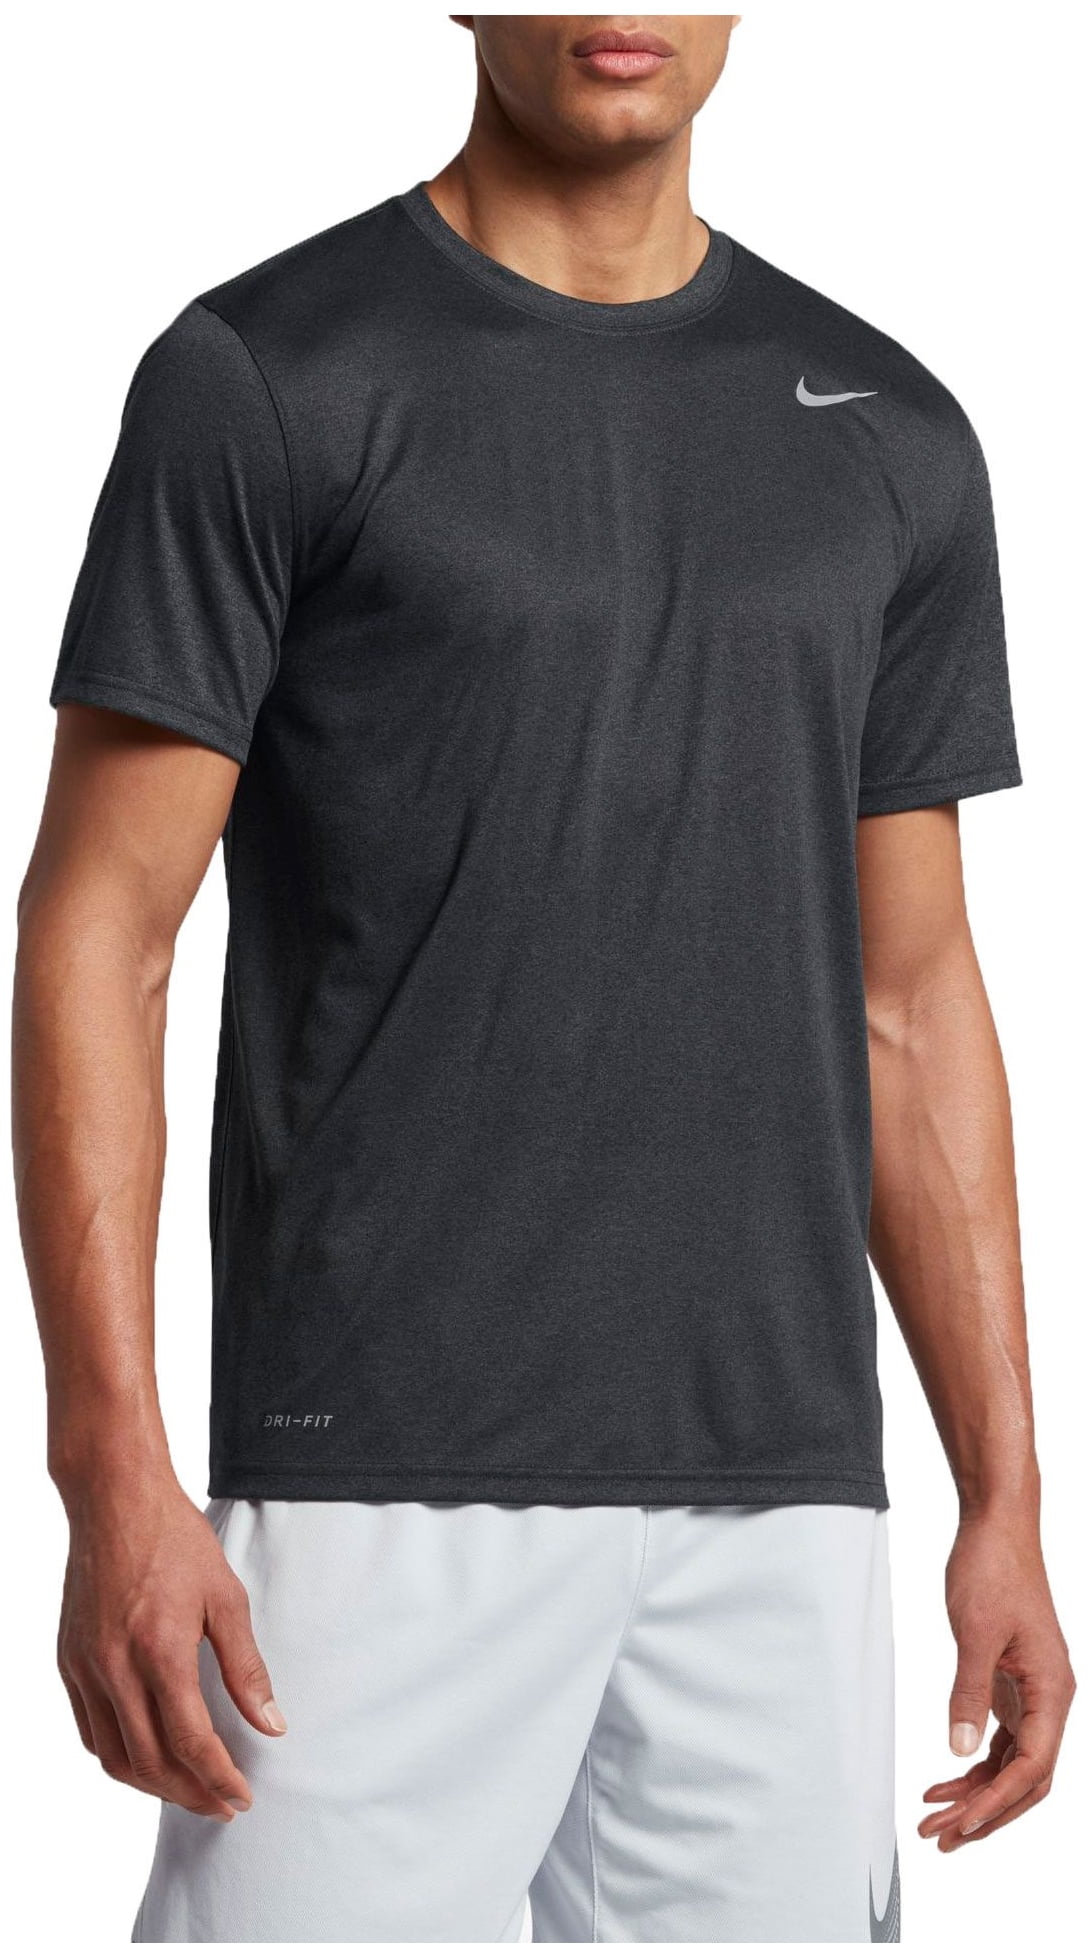 Nike Men's Legend 2.0 T-Shirt - Black/Carbon Heather - Size S - Walmart.com